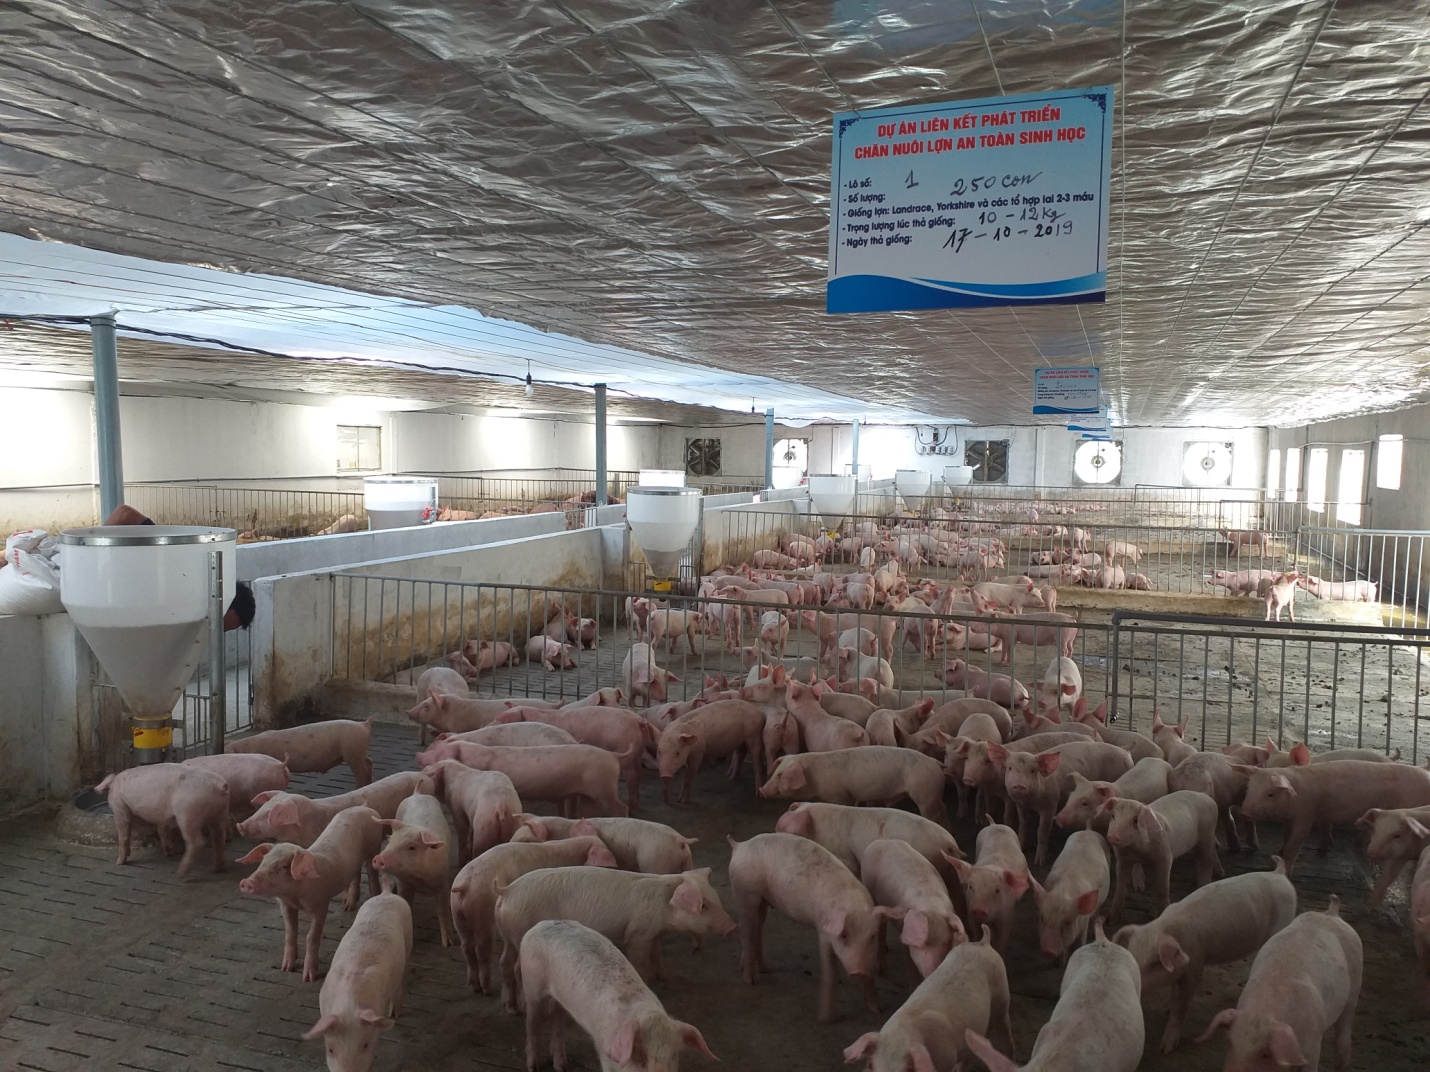 Mô hình nuôi lợn an toàn sinh học tại xã Triệu Trạch